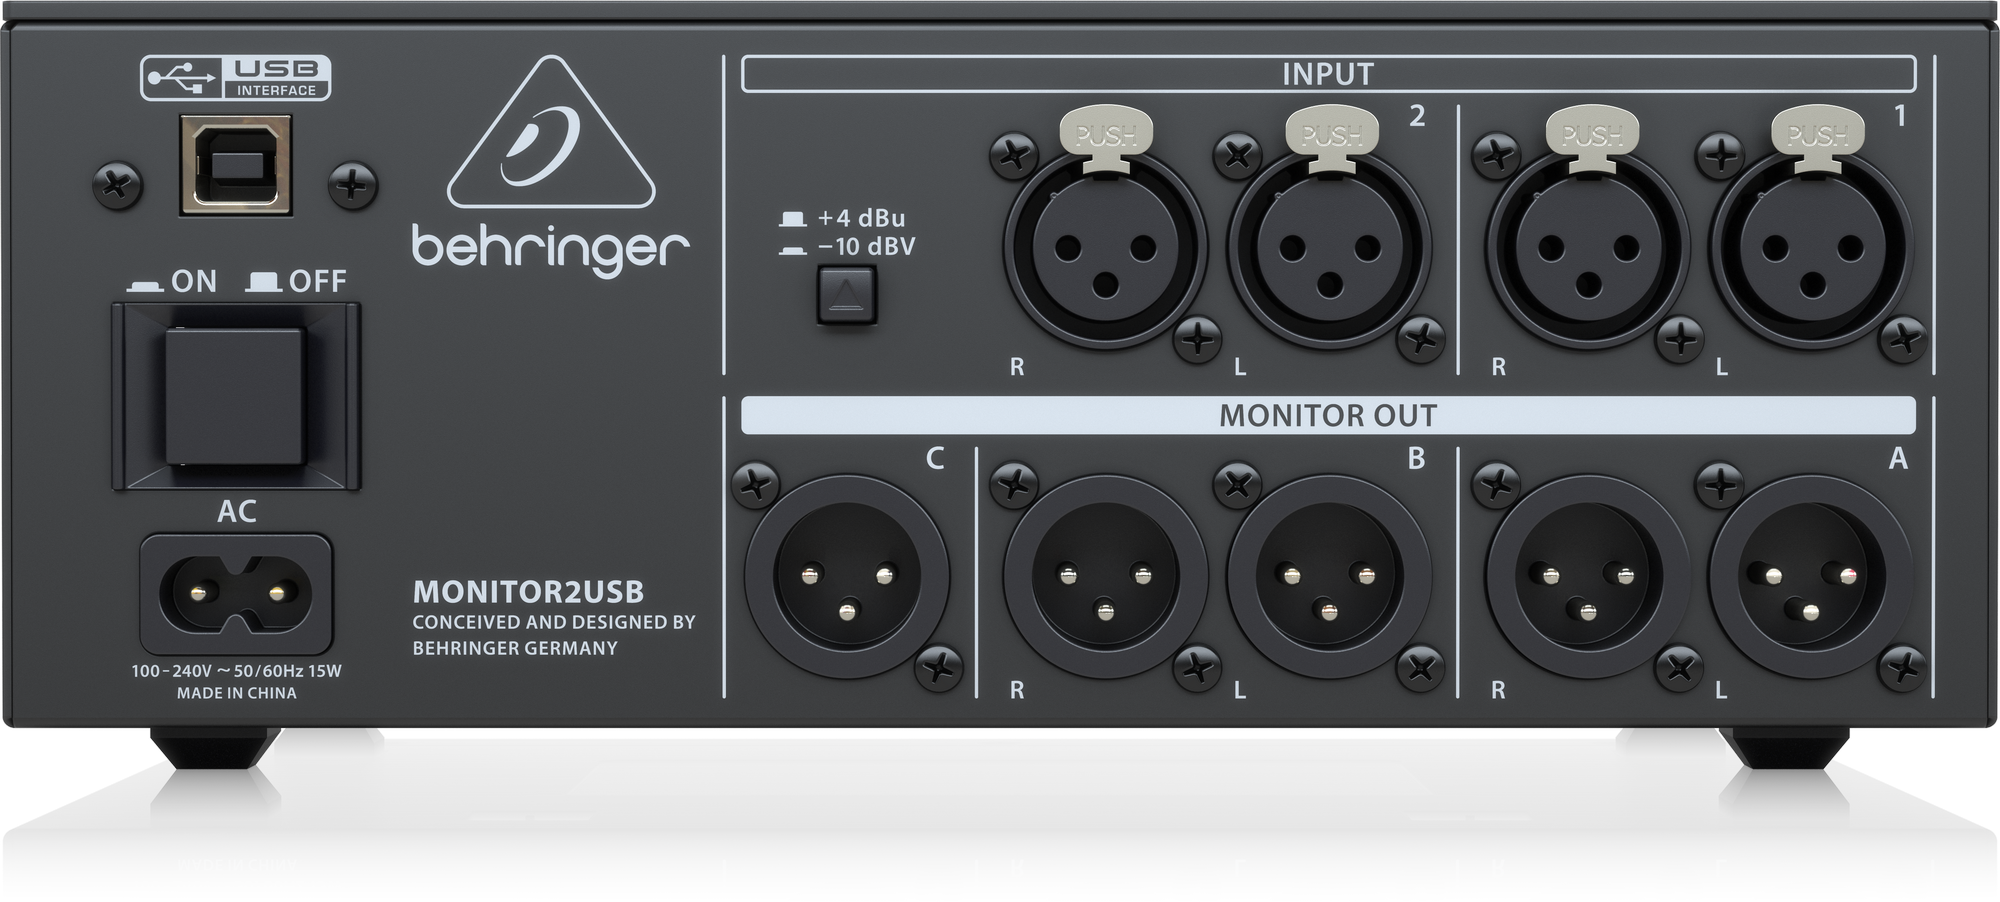 BEHRINGER MONITOR2USB - мониторный контроллер, 3 выхода на мониторы купить в prostore.me